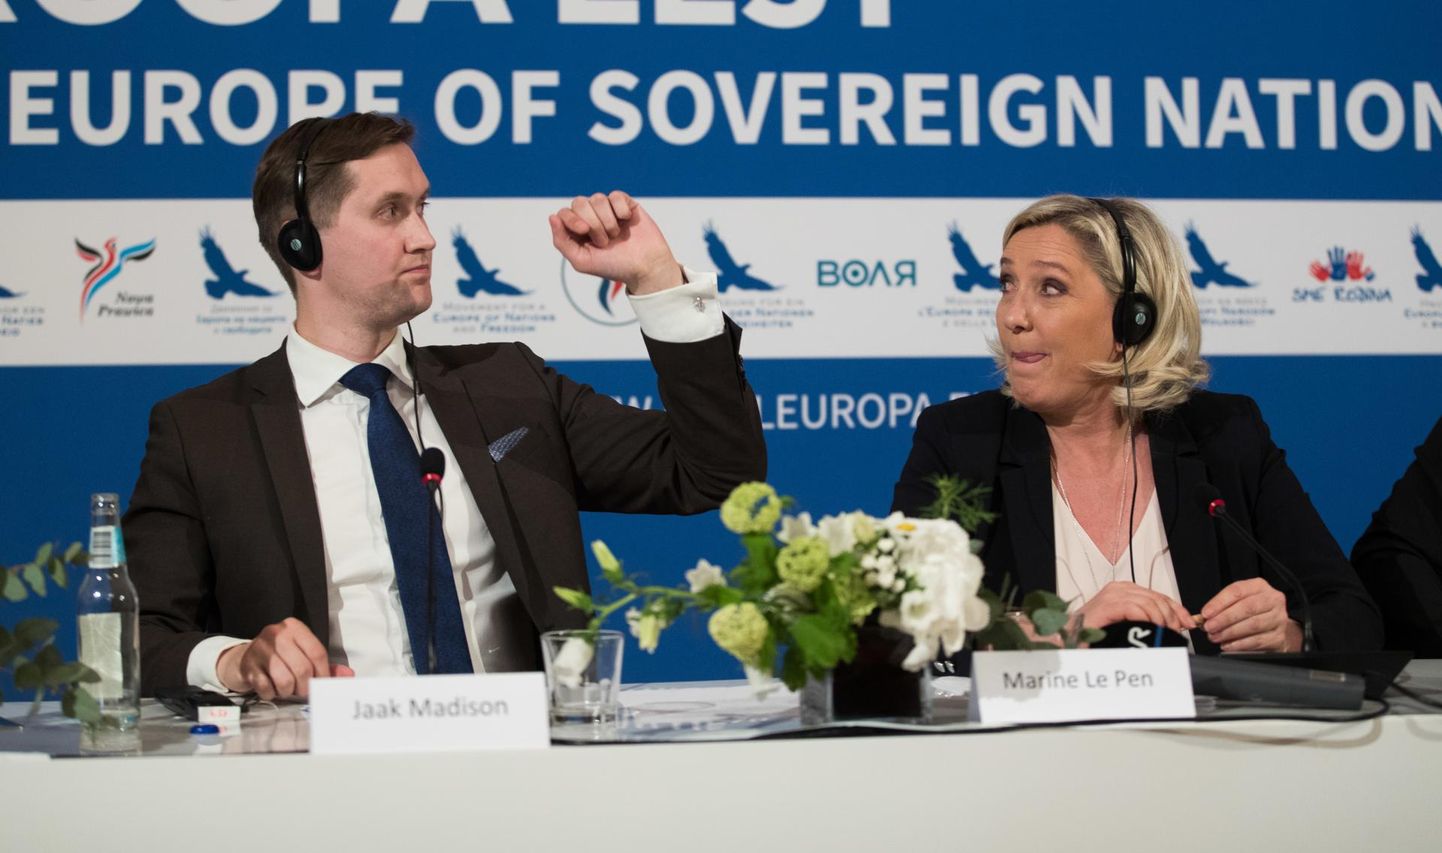 Viljandi volikogust lahkuv tulevane europarlamendi liige Jaak Madison hakkab kuuluma fraktsiooni, mille üks juht on Prantsusmaal valimisvõidu saavutanud Marine Le Pen.